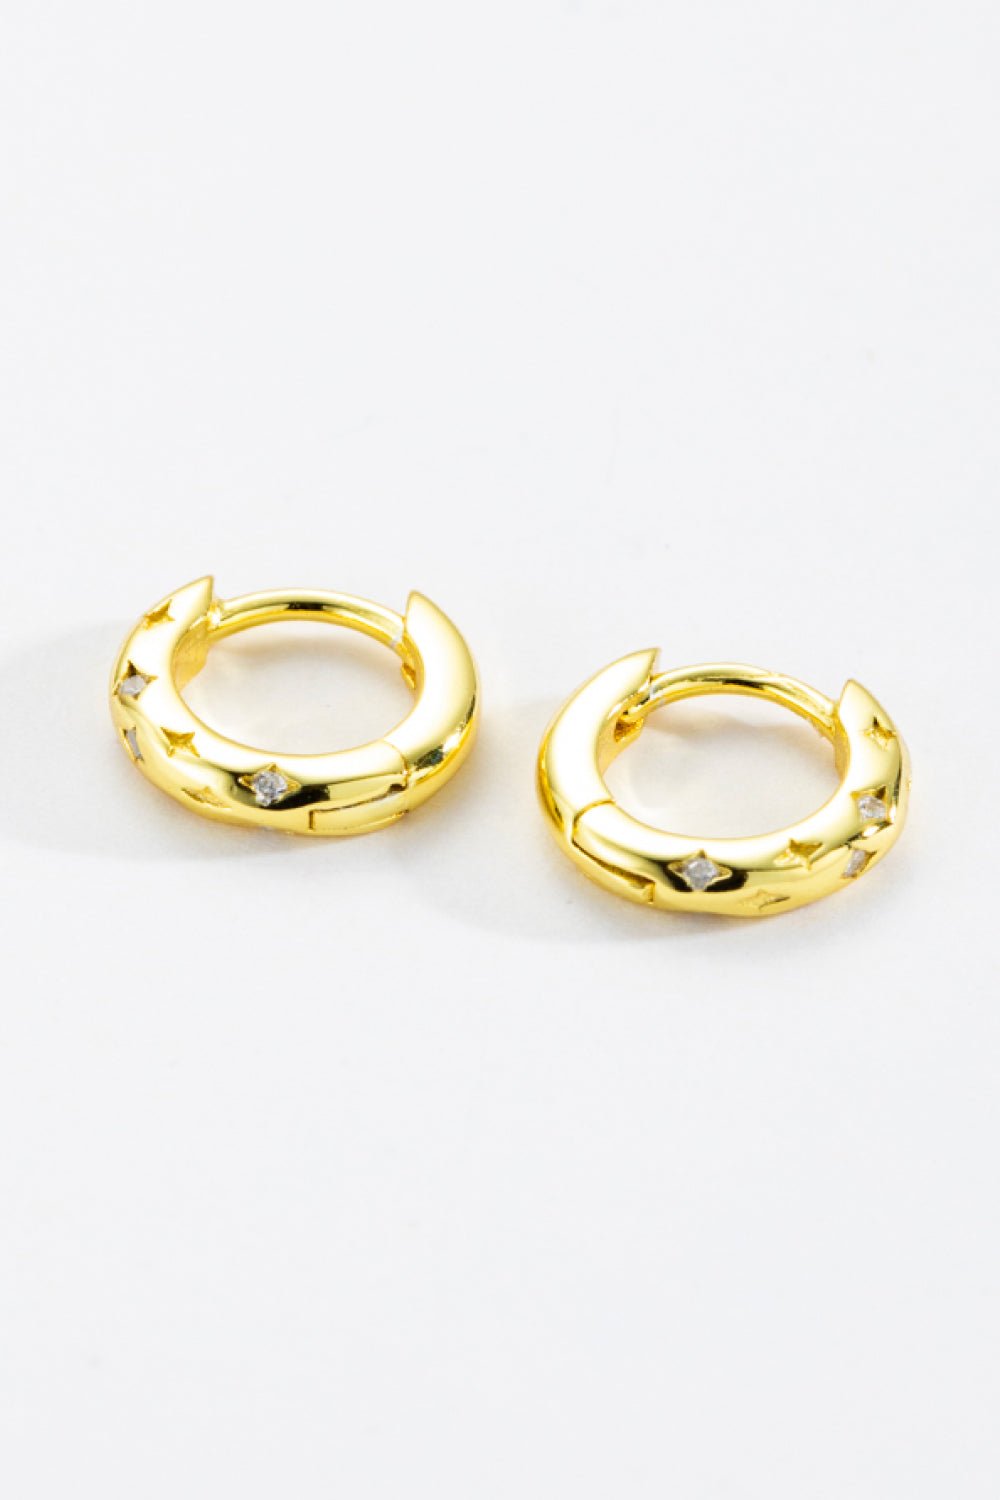 925 Sterling Silver Huggie Earrings - Kings Crown Jewel Boutique